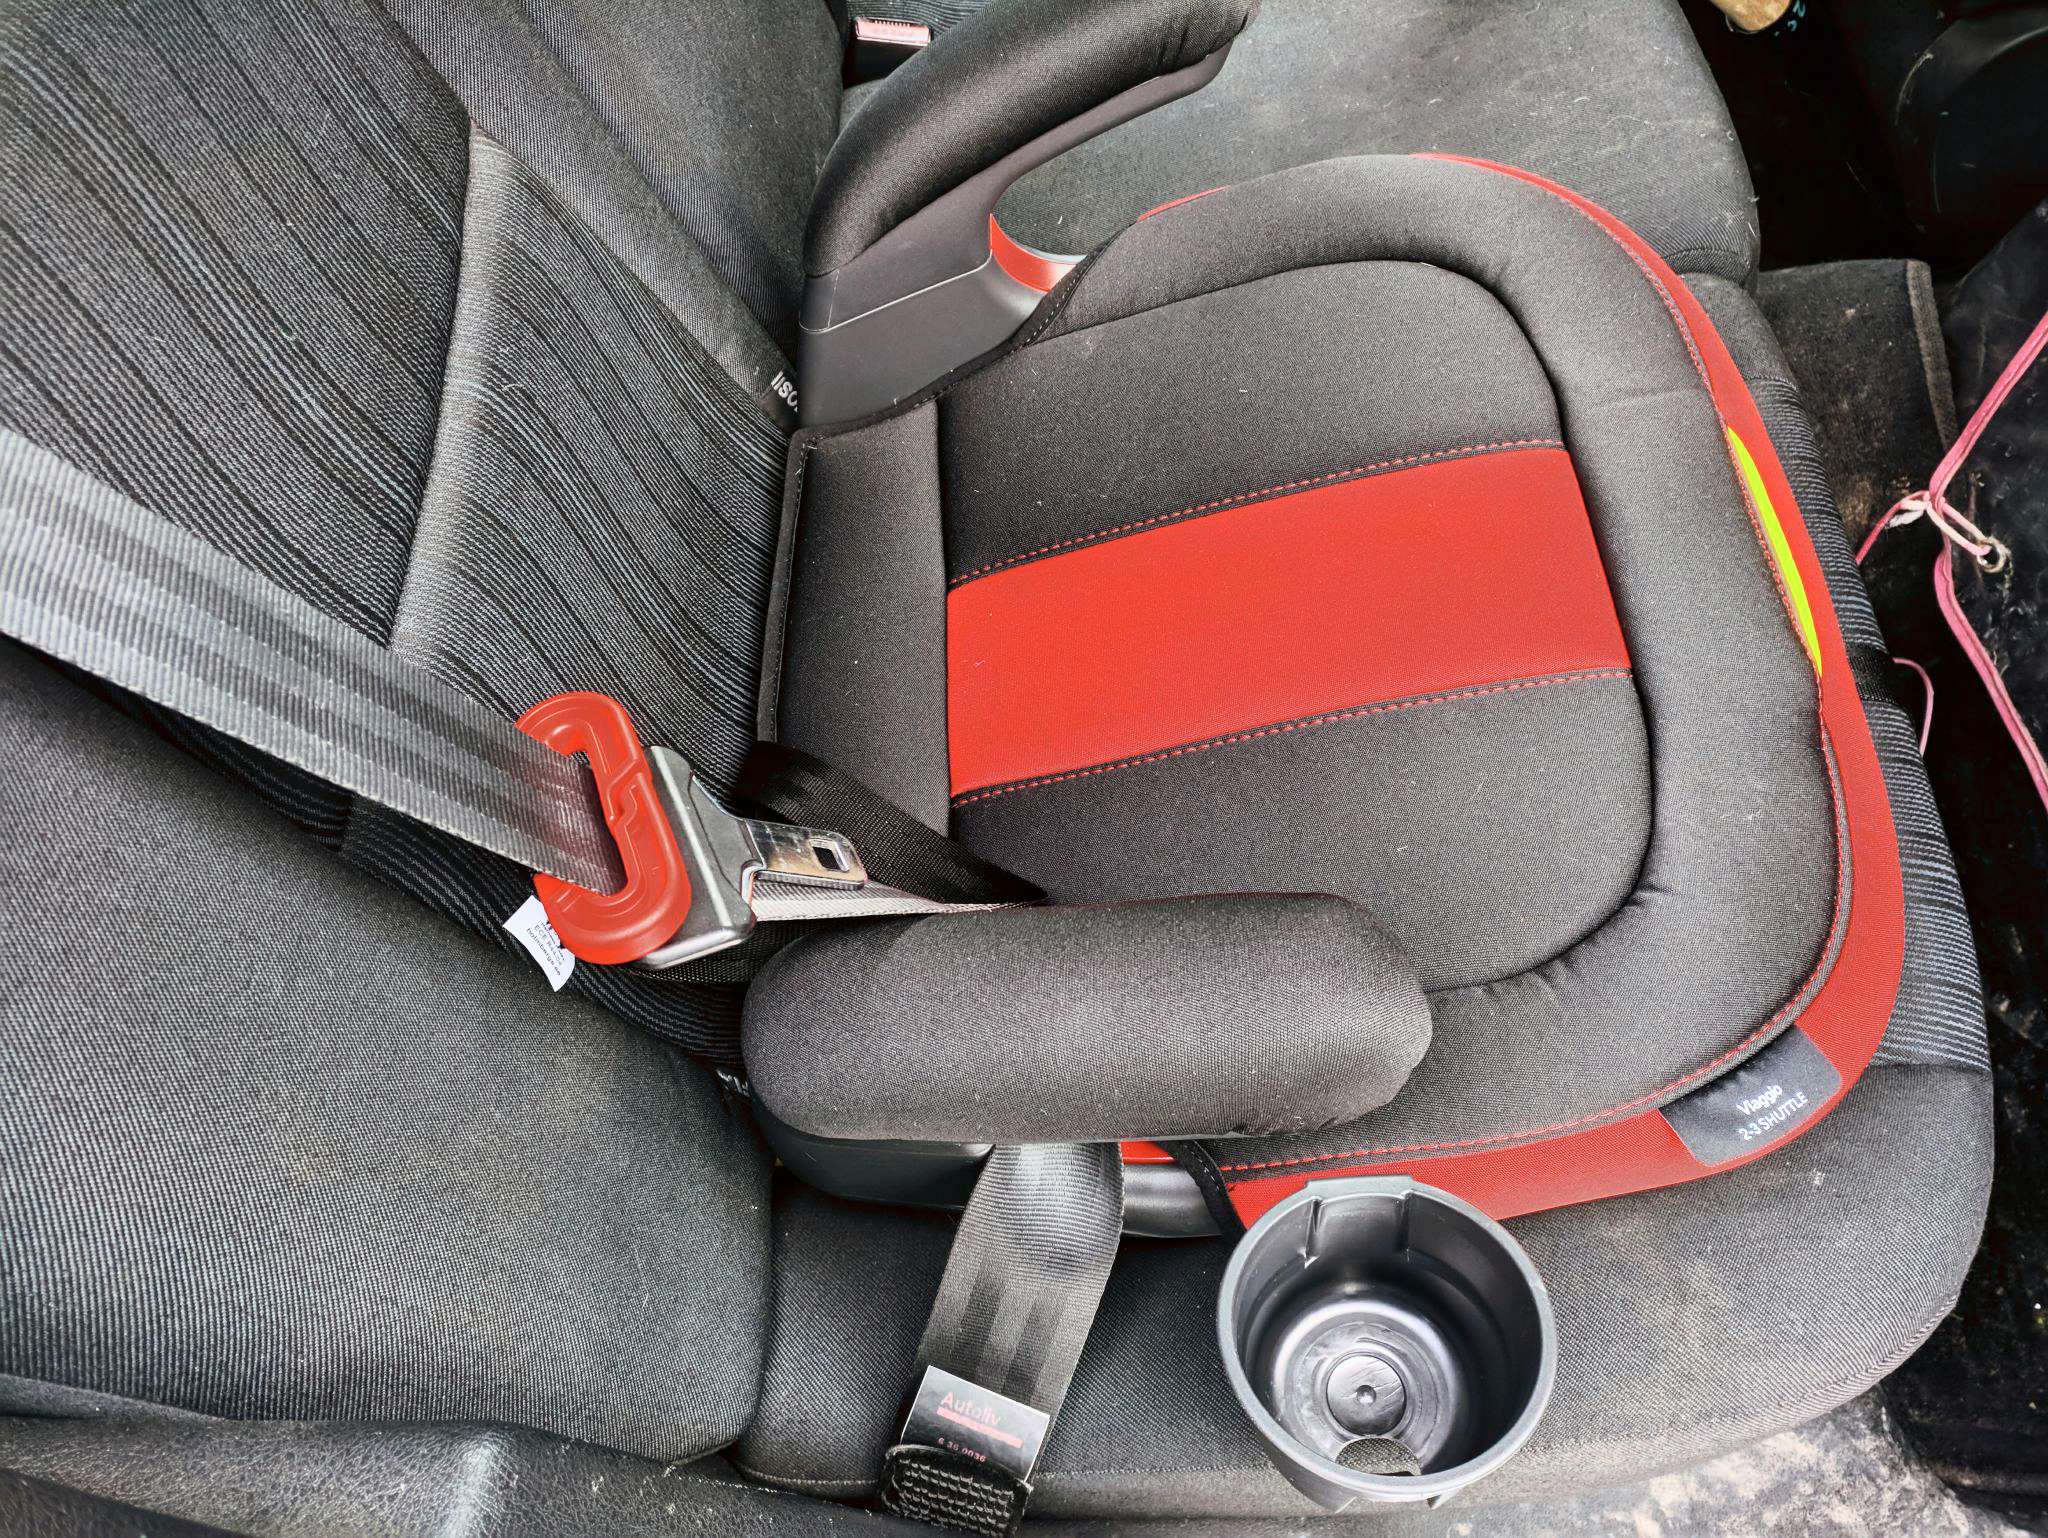 Как крепится кресло в автомобиле